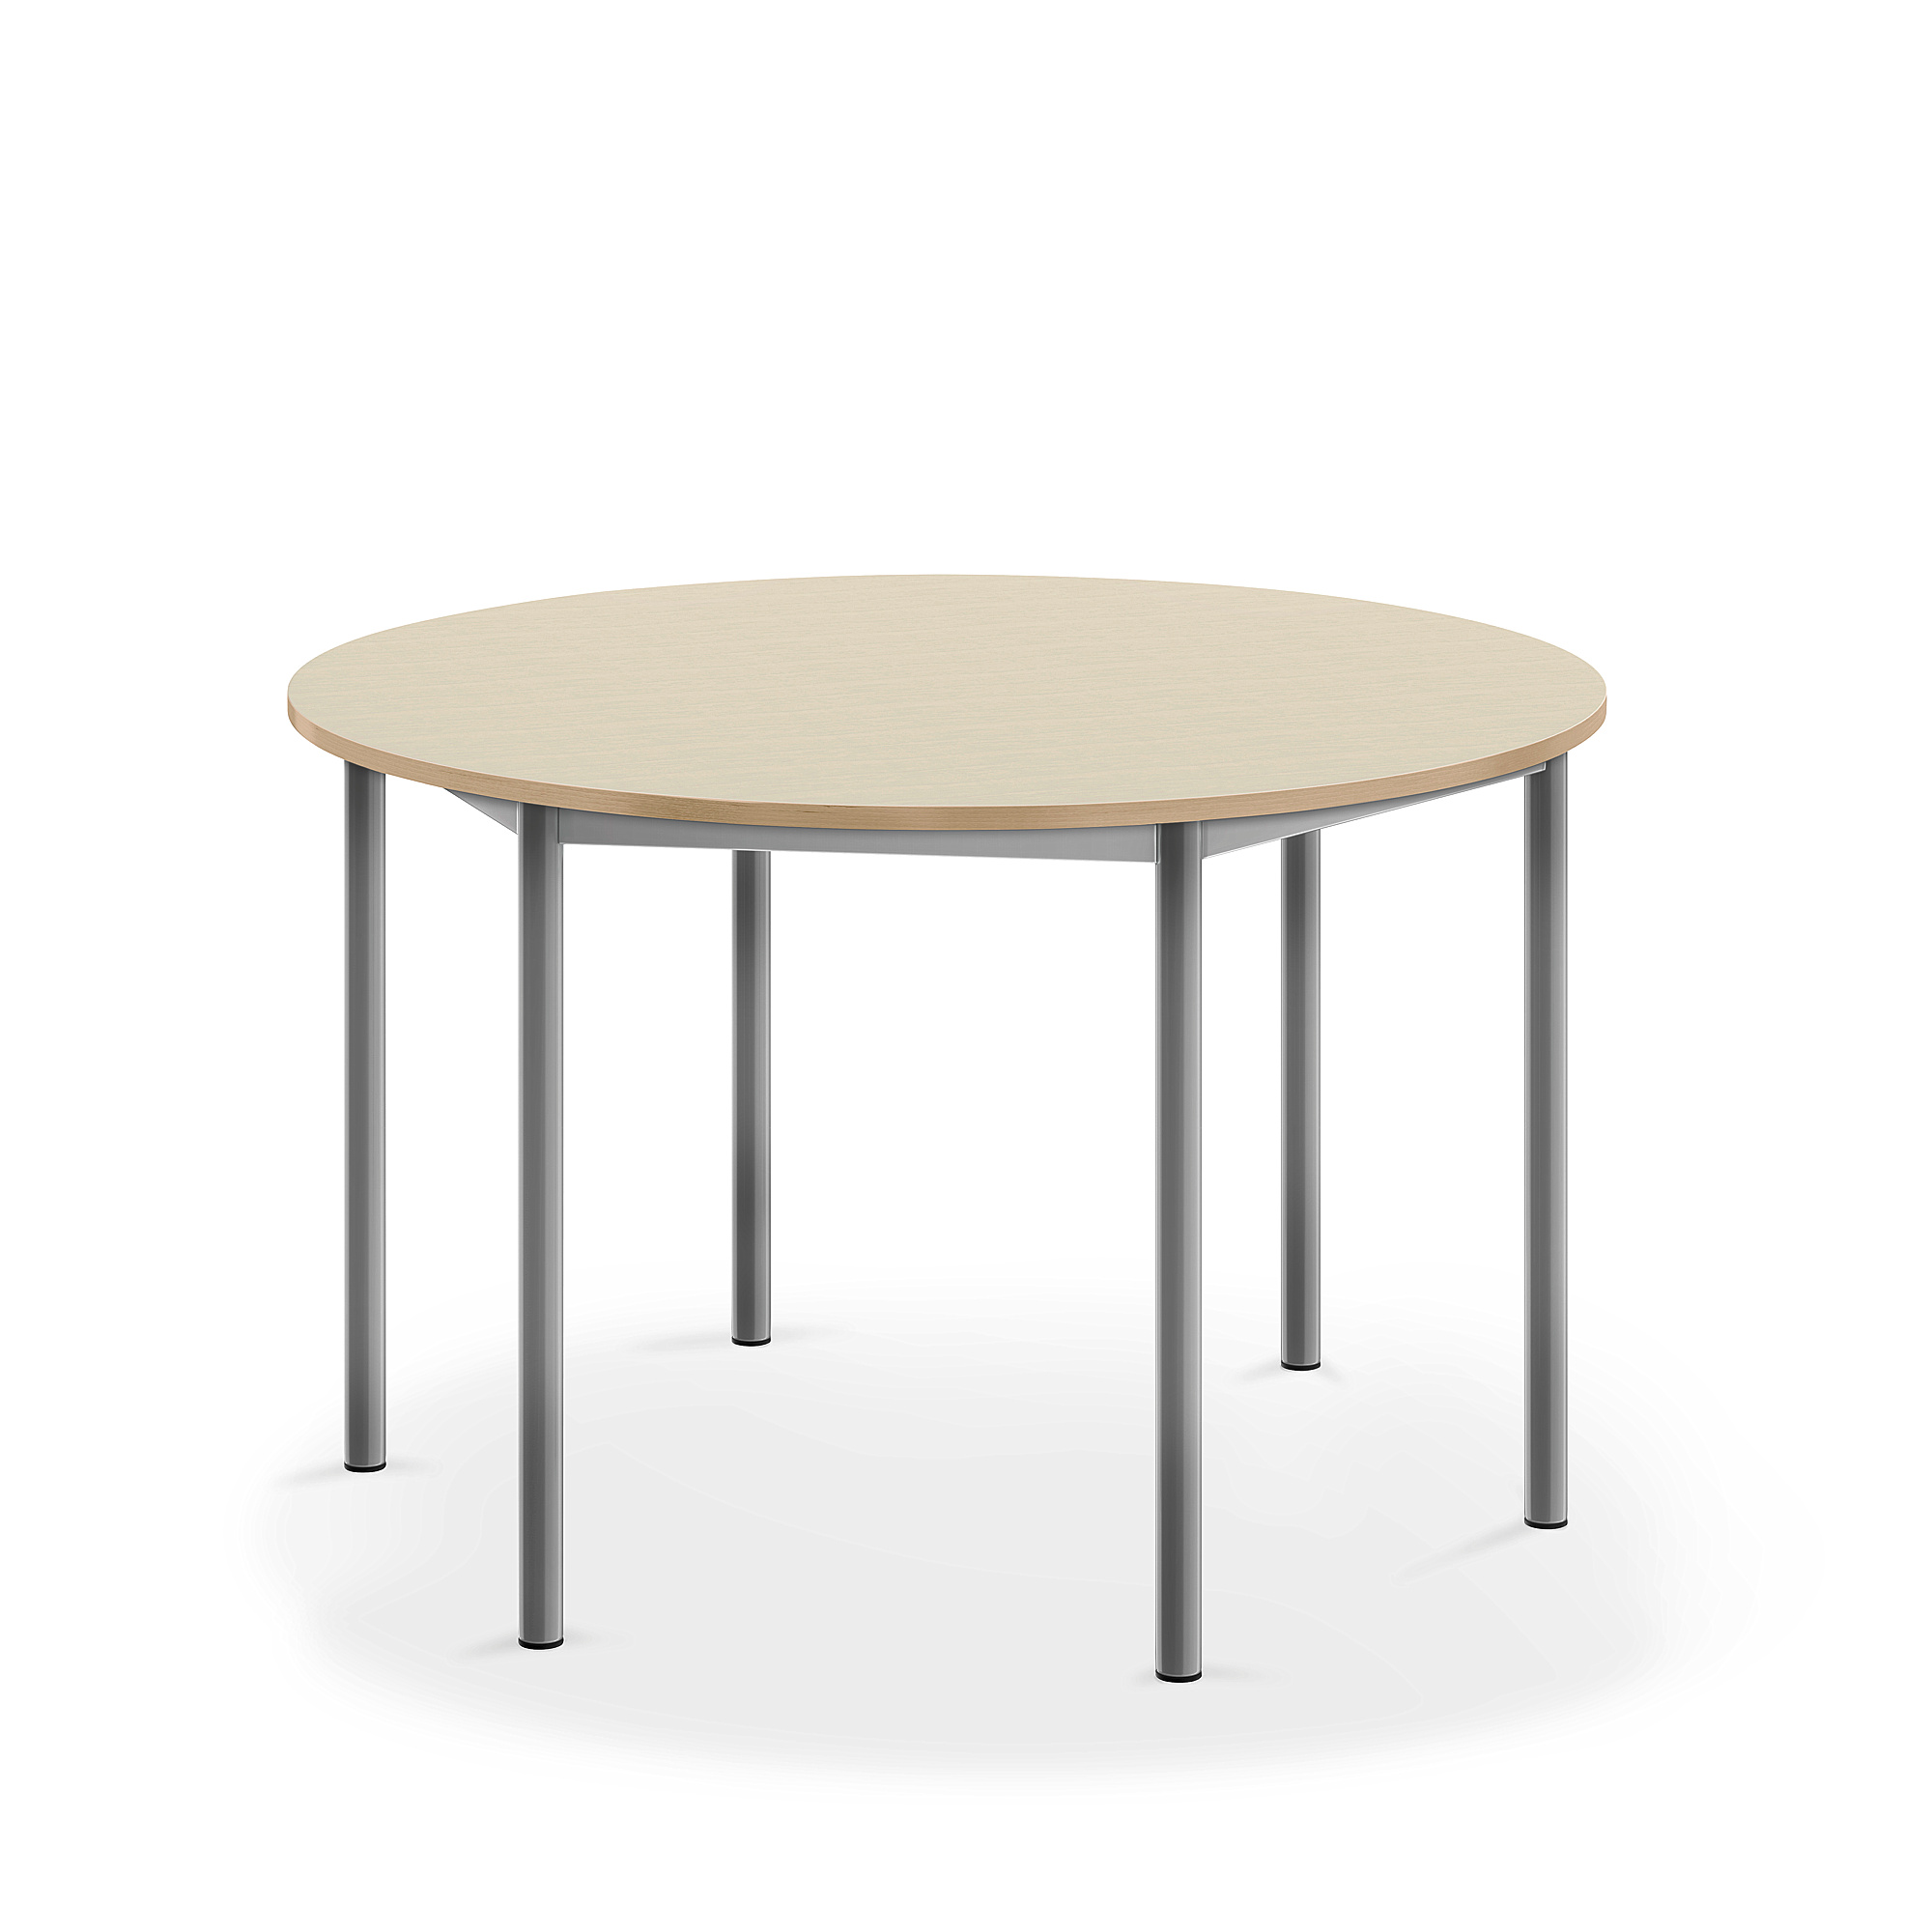 Stůl SONITUS, Ø1200x720 mm, stříbrné nohy, HPL deska tlumící hluk, bříza